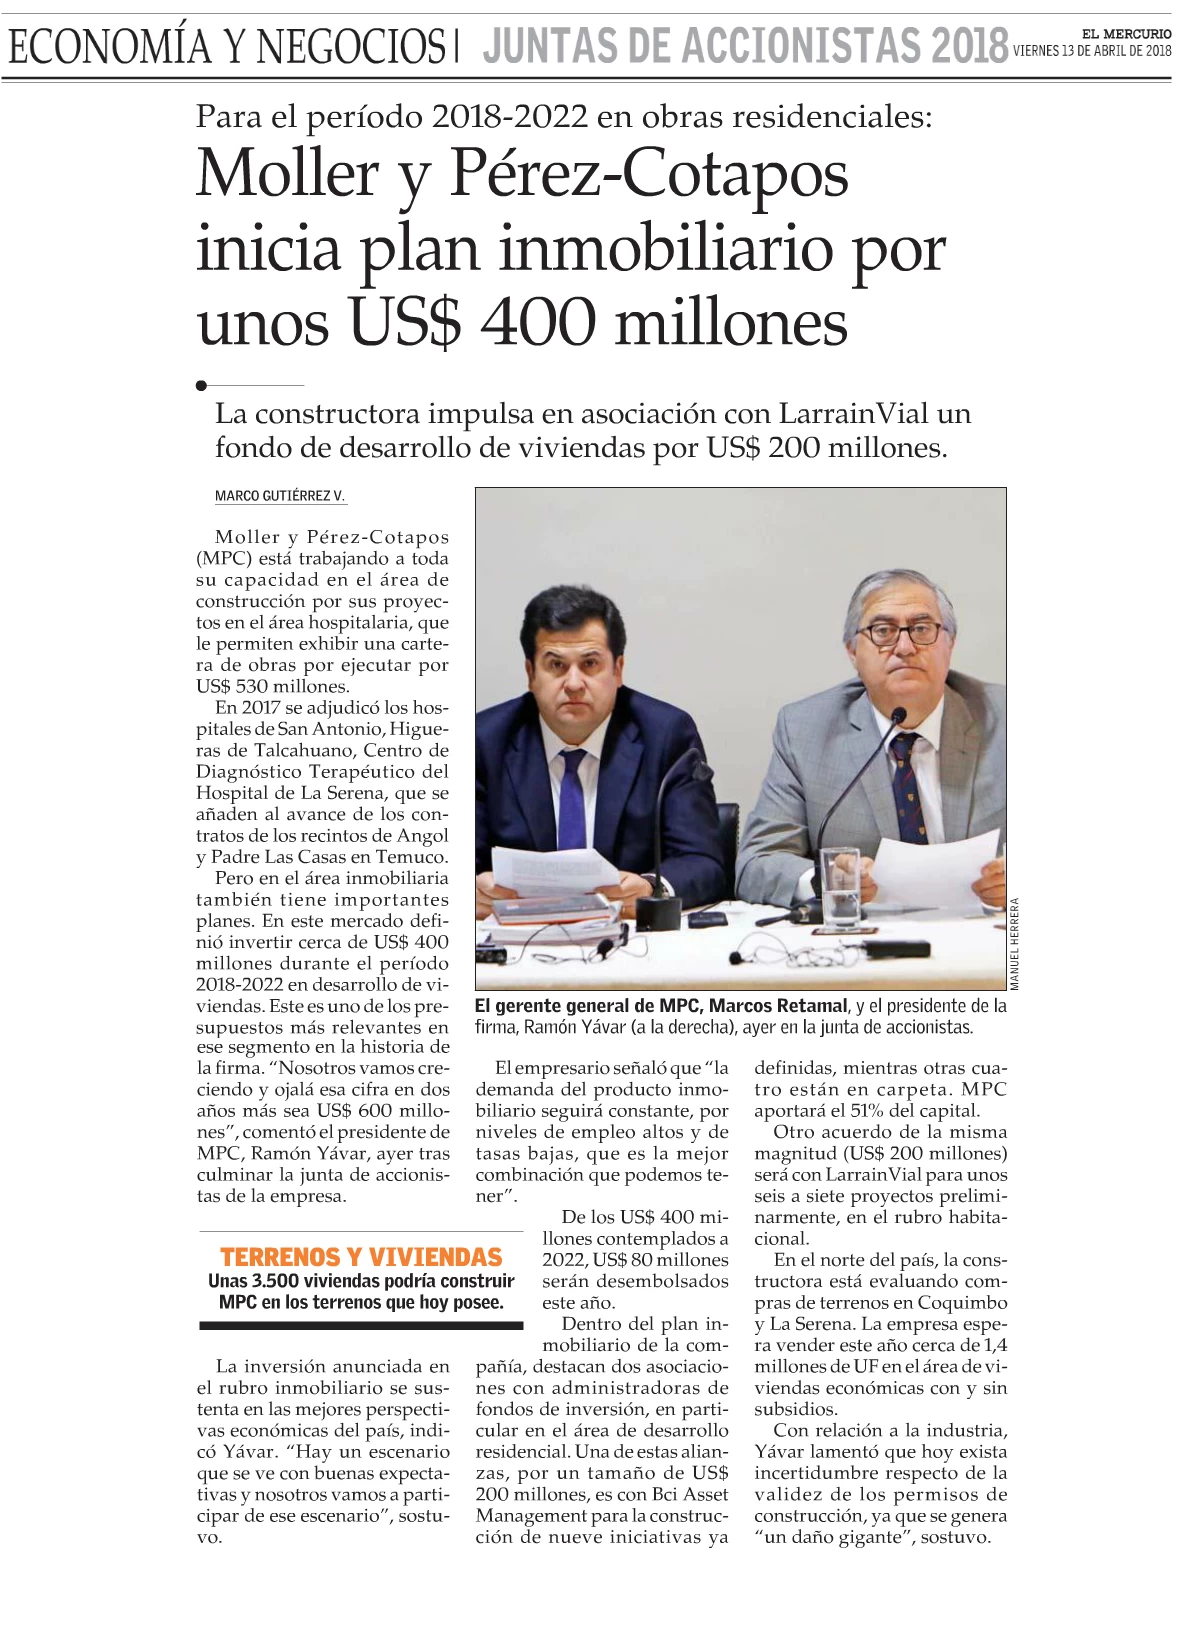 Moller y Pérez-Cotapos inicia plan inmobiliario por unos $400 millones